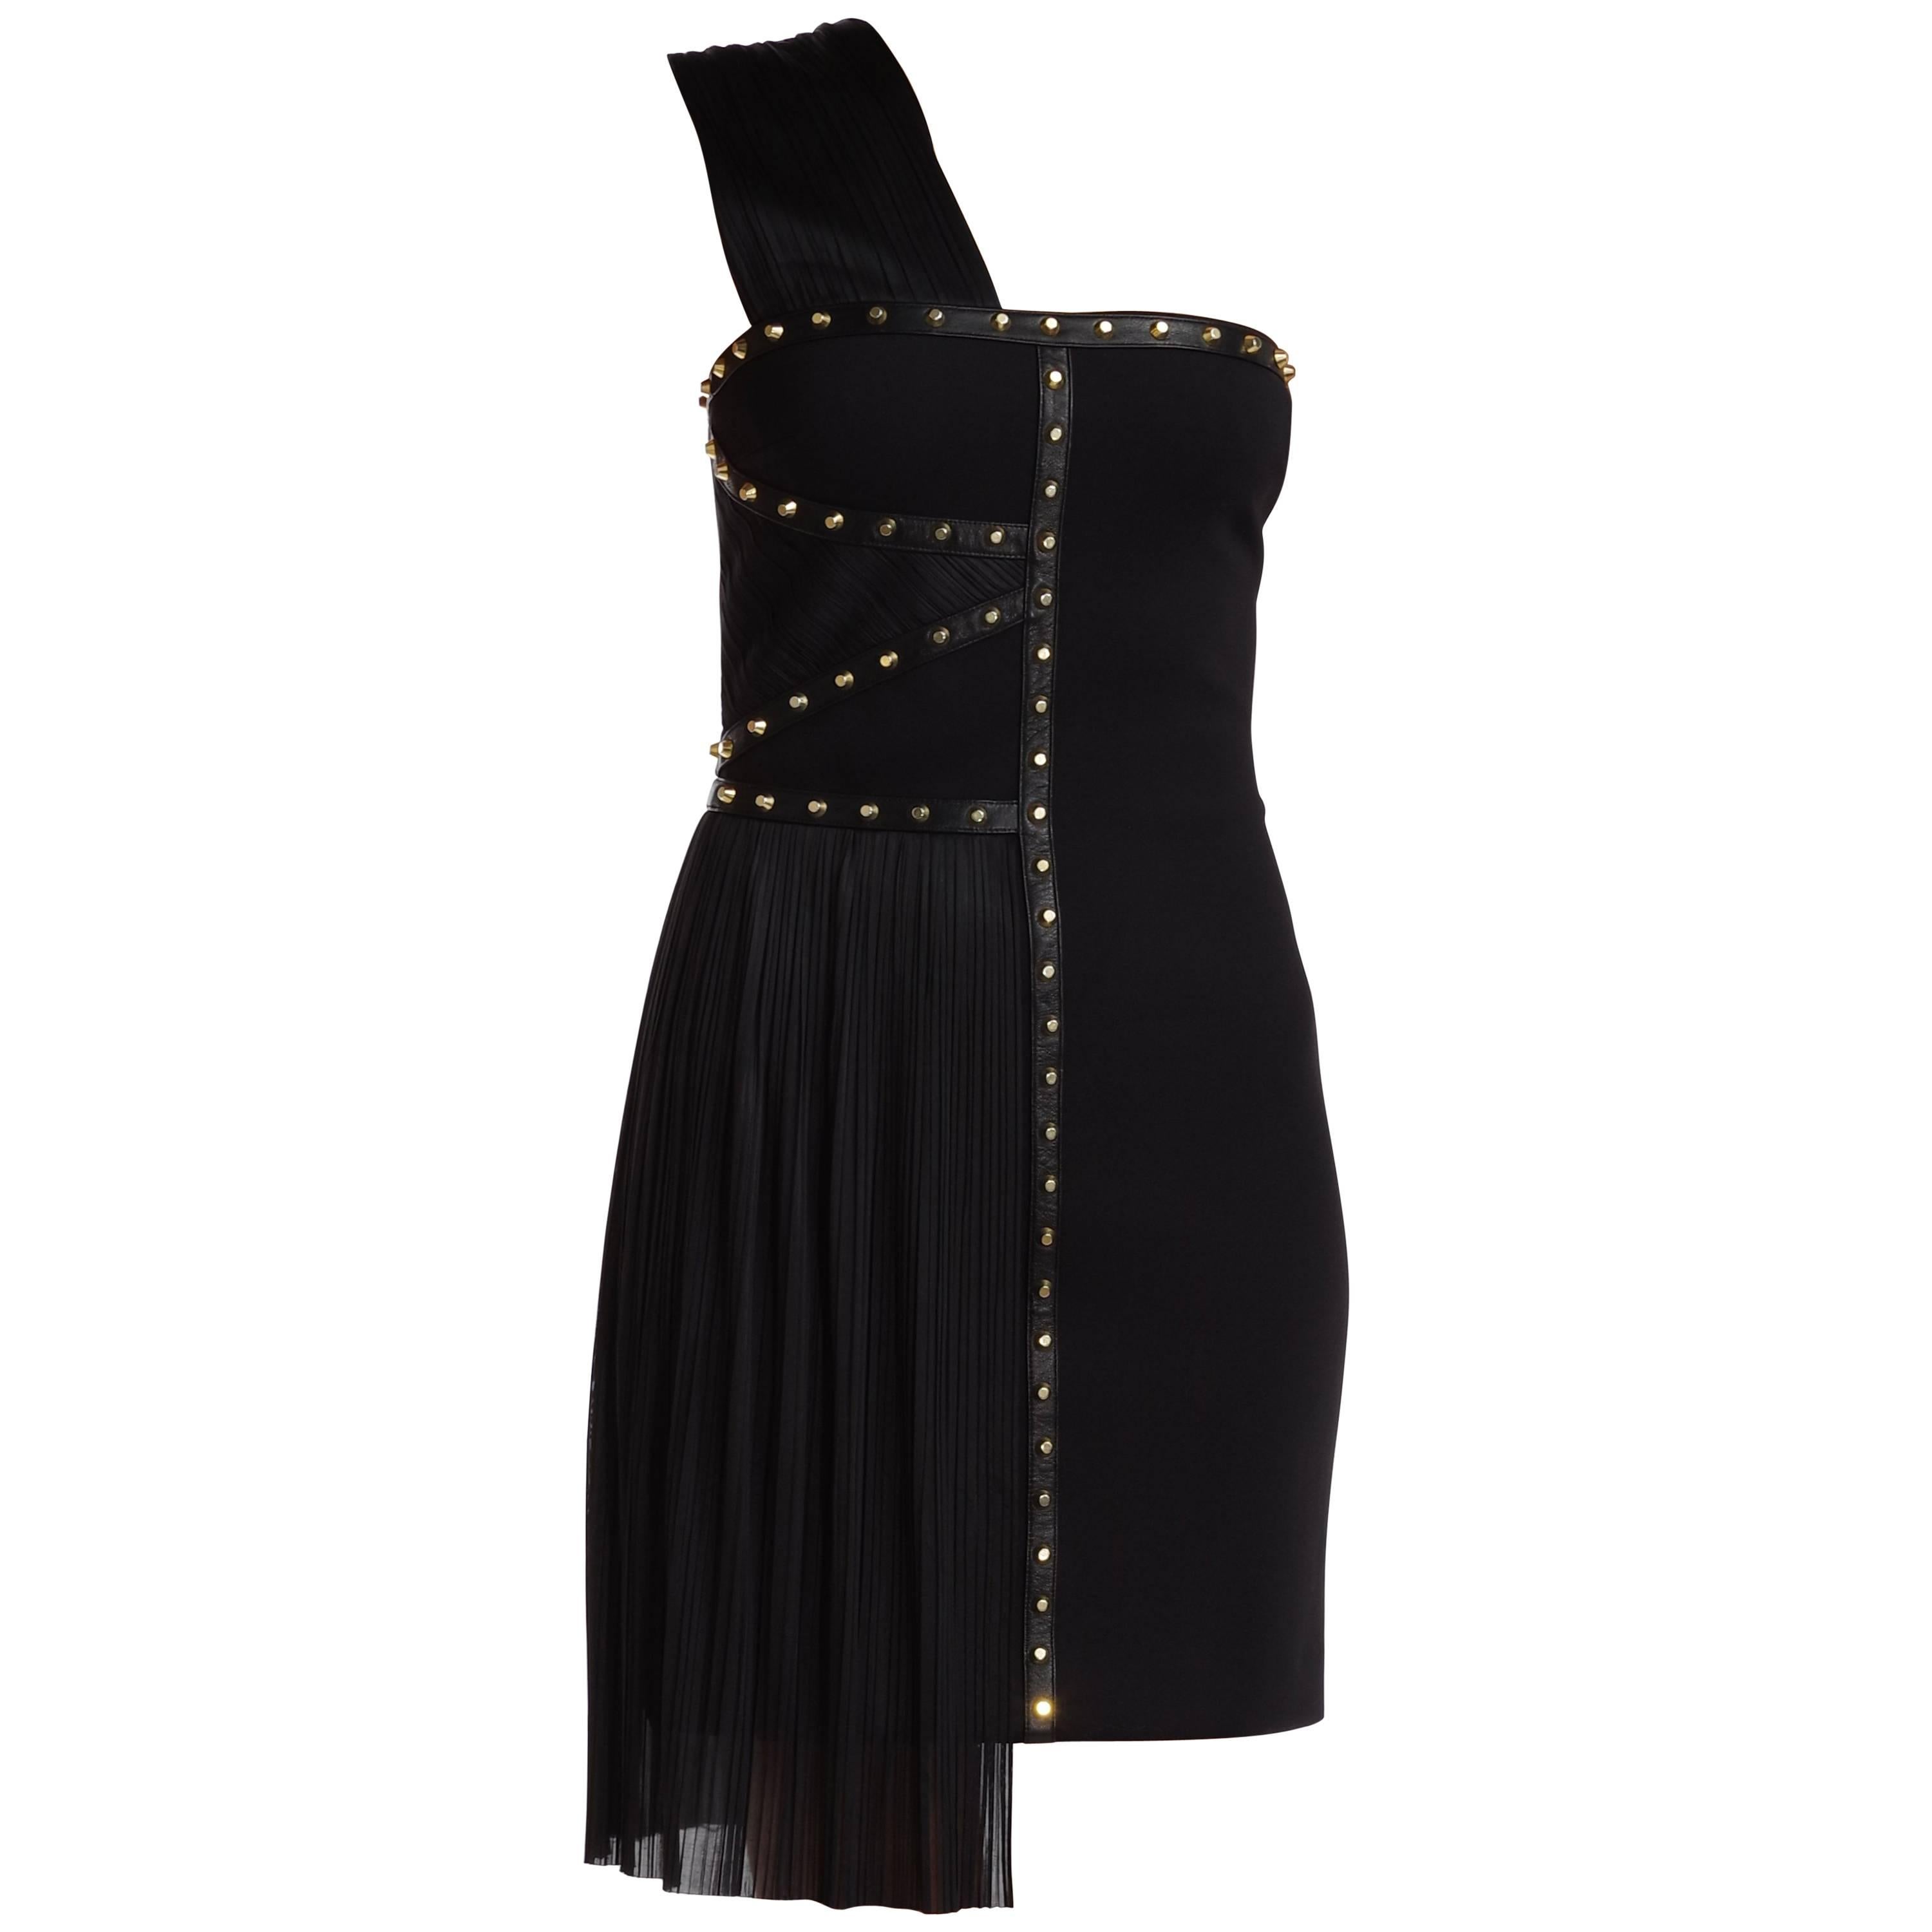 S/S 2012 VERSACE One Shoulder Black Studded Dress For Sale